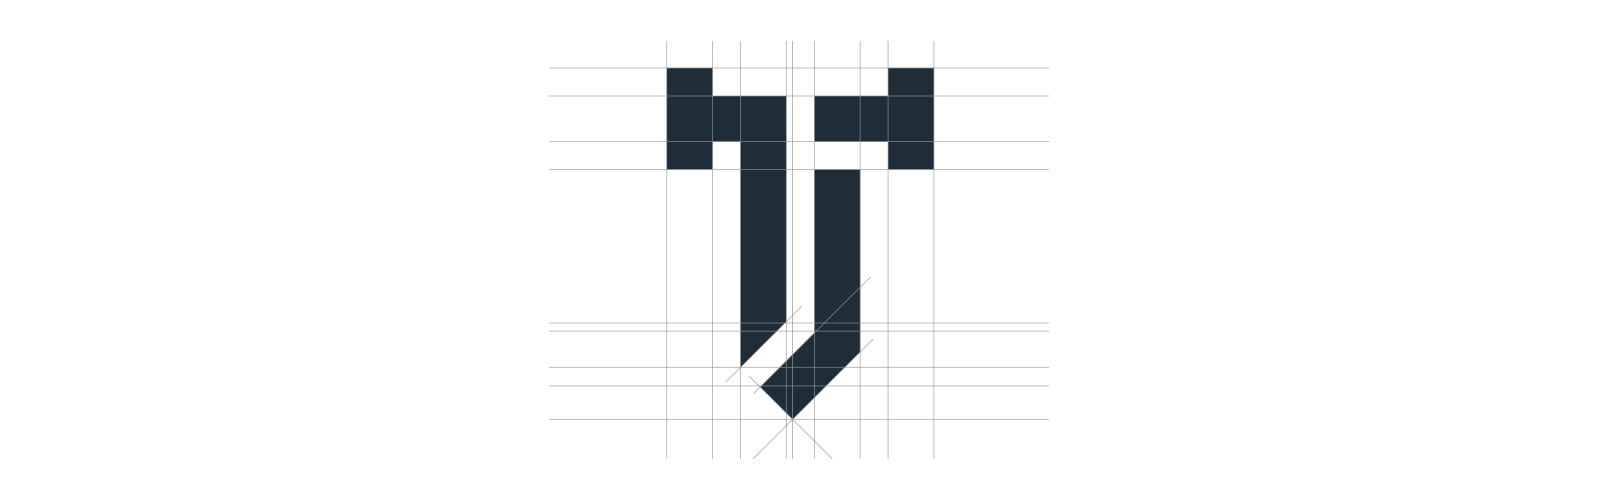 TJ and Associates, L.T.D. Logo Identity on Grid